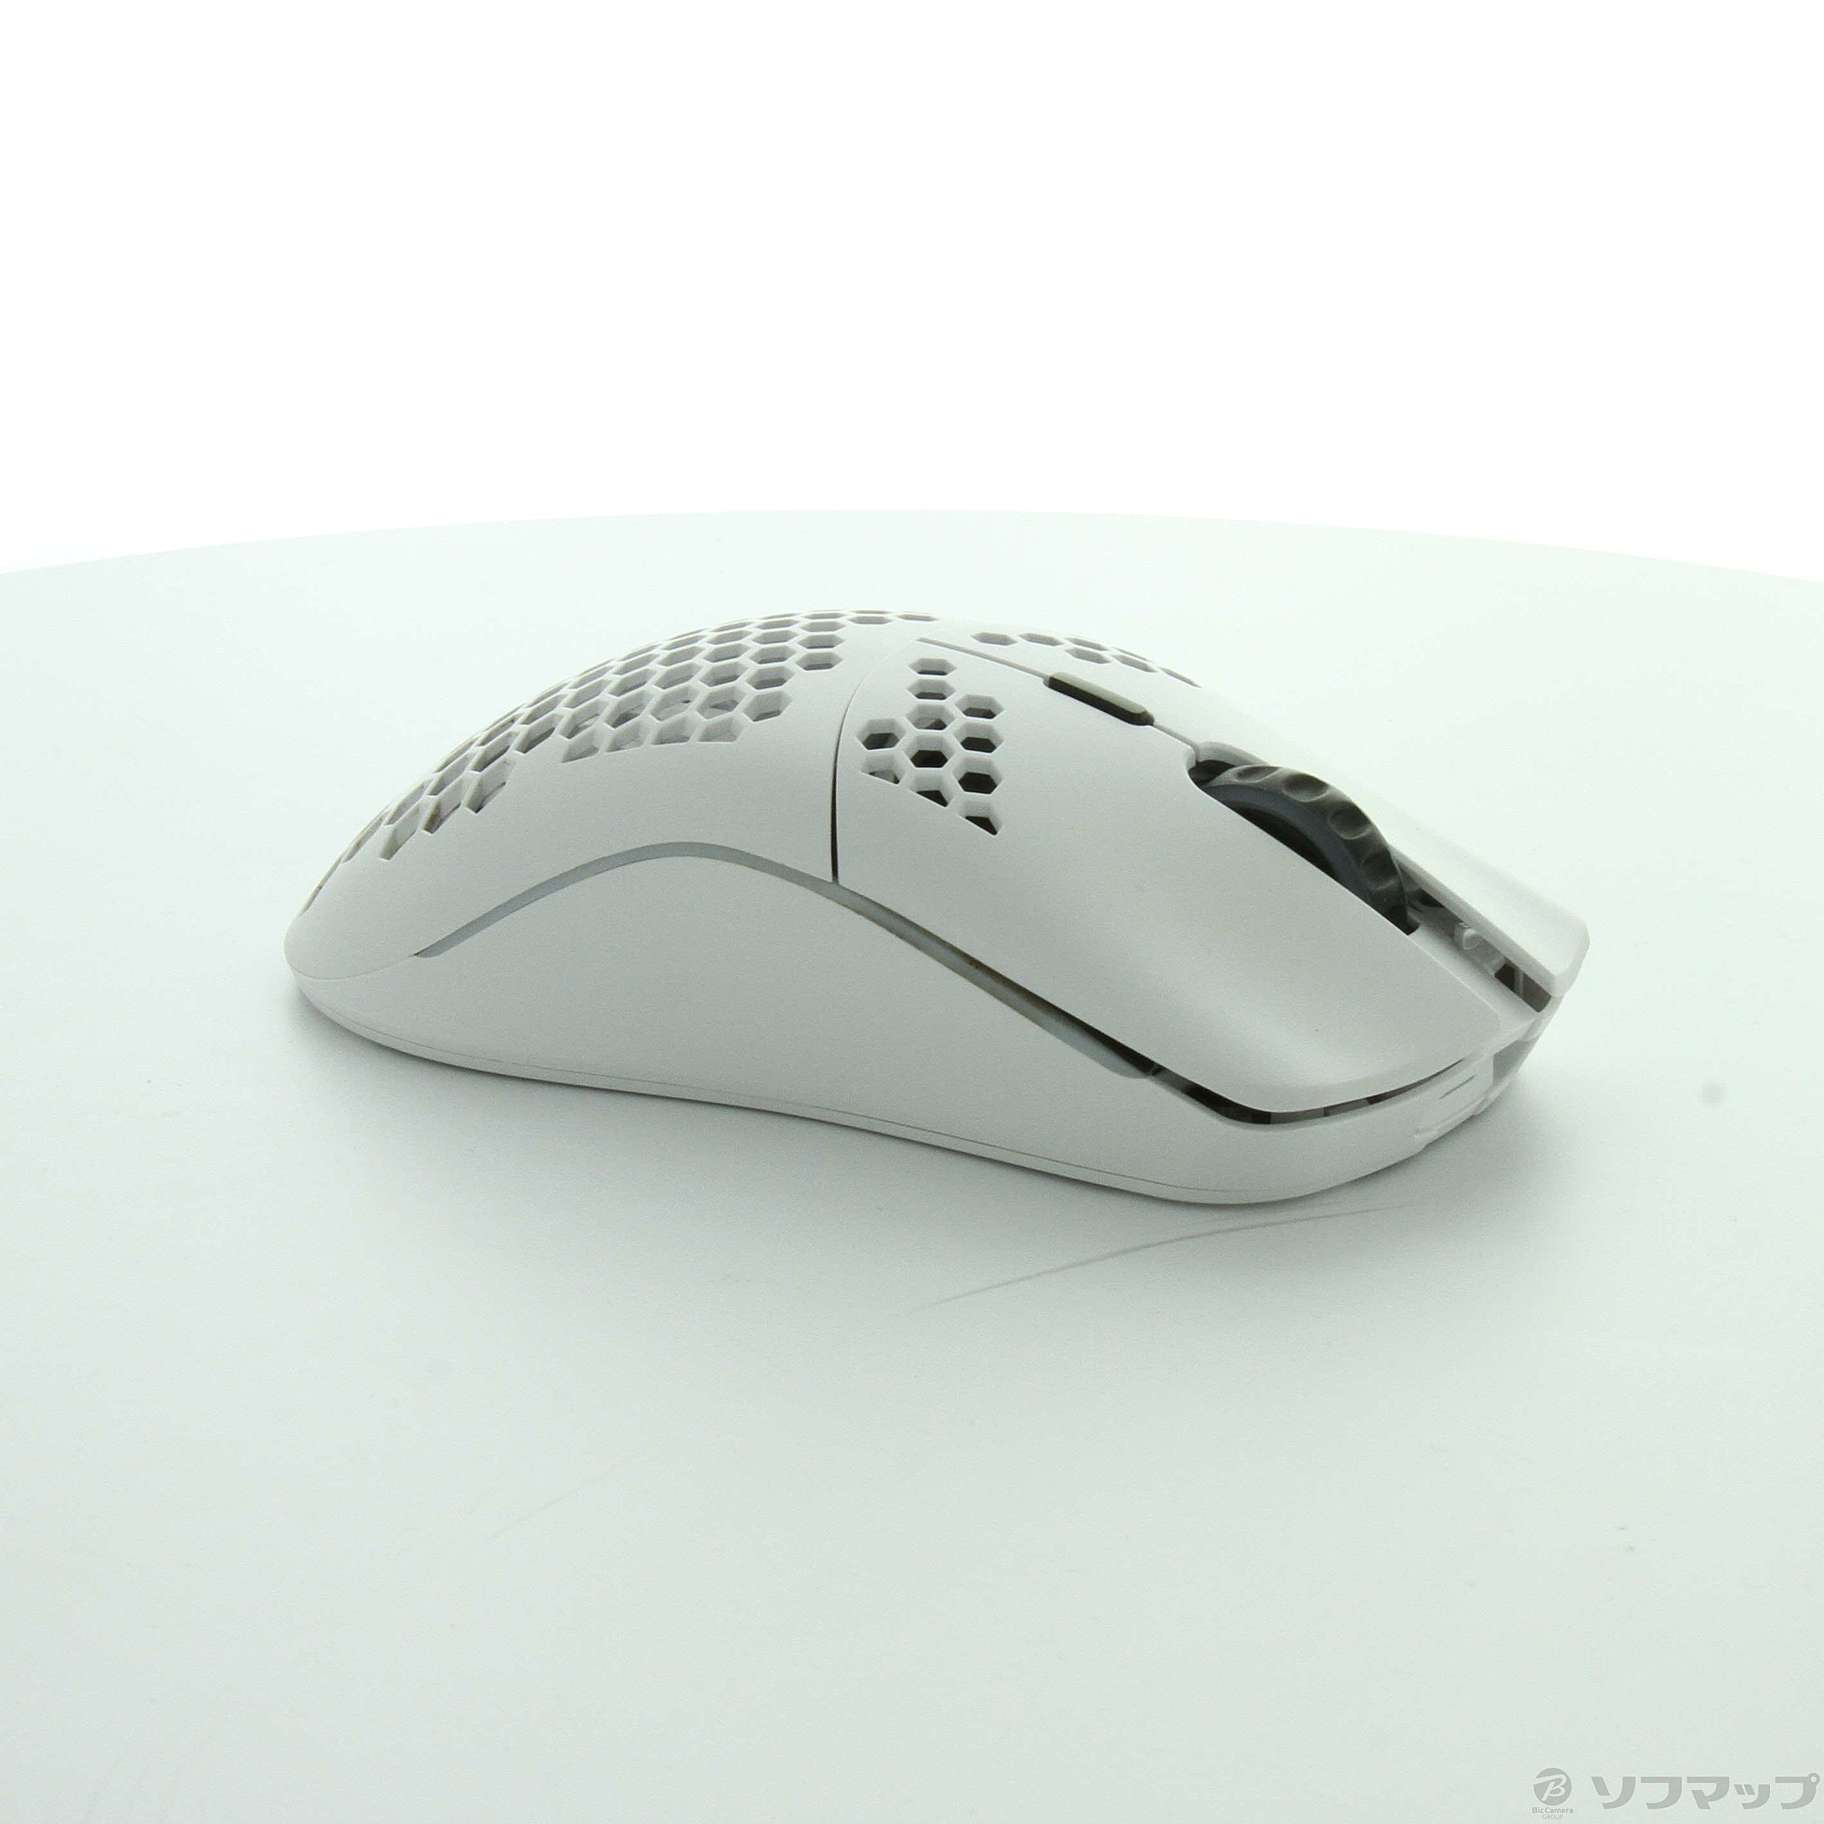 GLORIOUS MODEL O- wireless White ホワイト